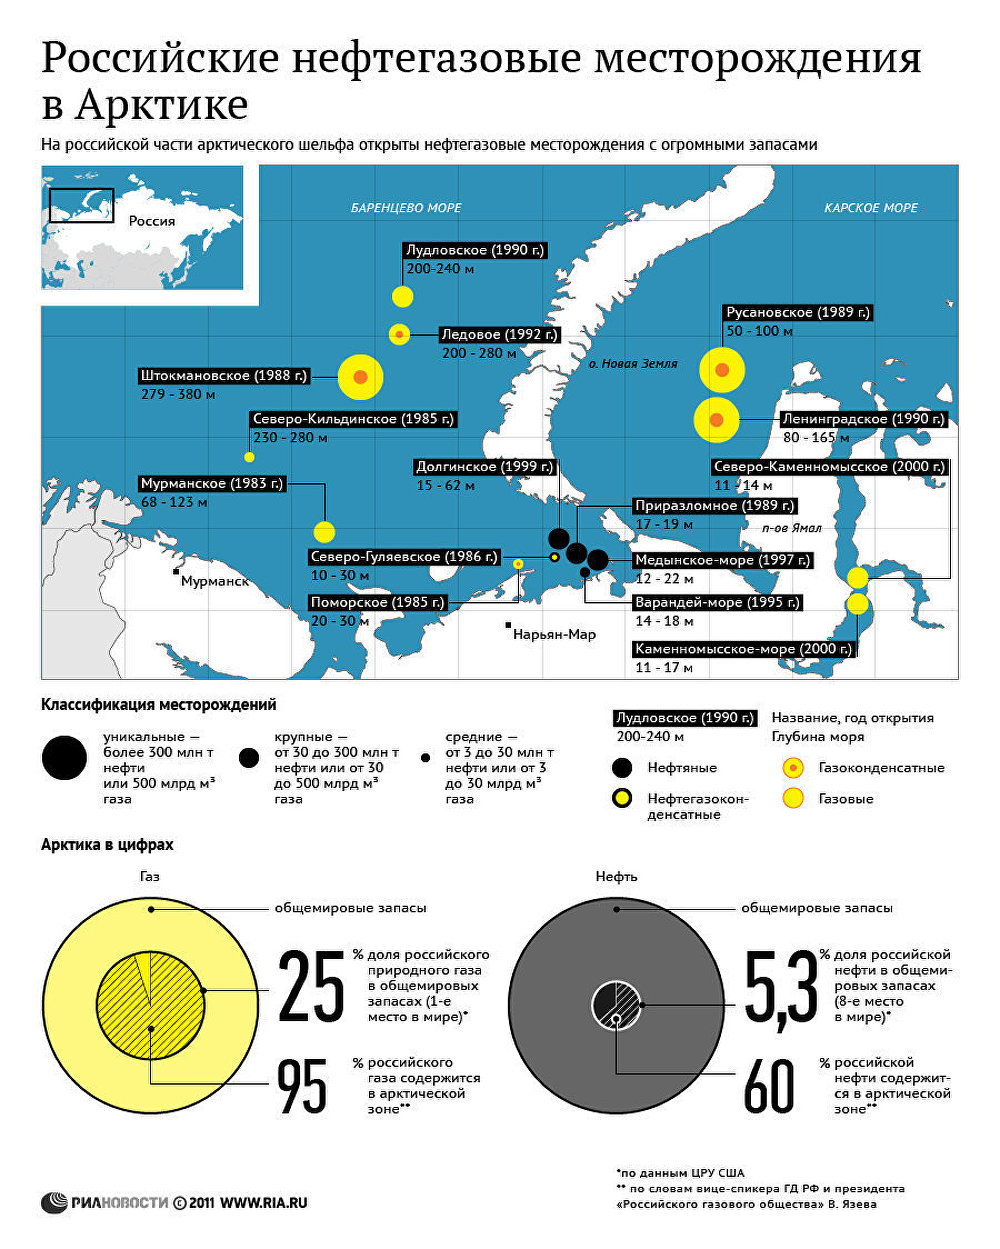 Российские нефтегазовые месторождения в Арктике